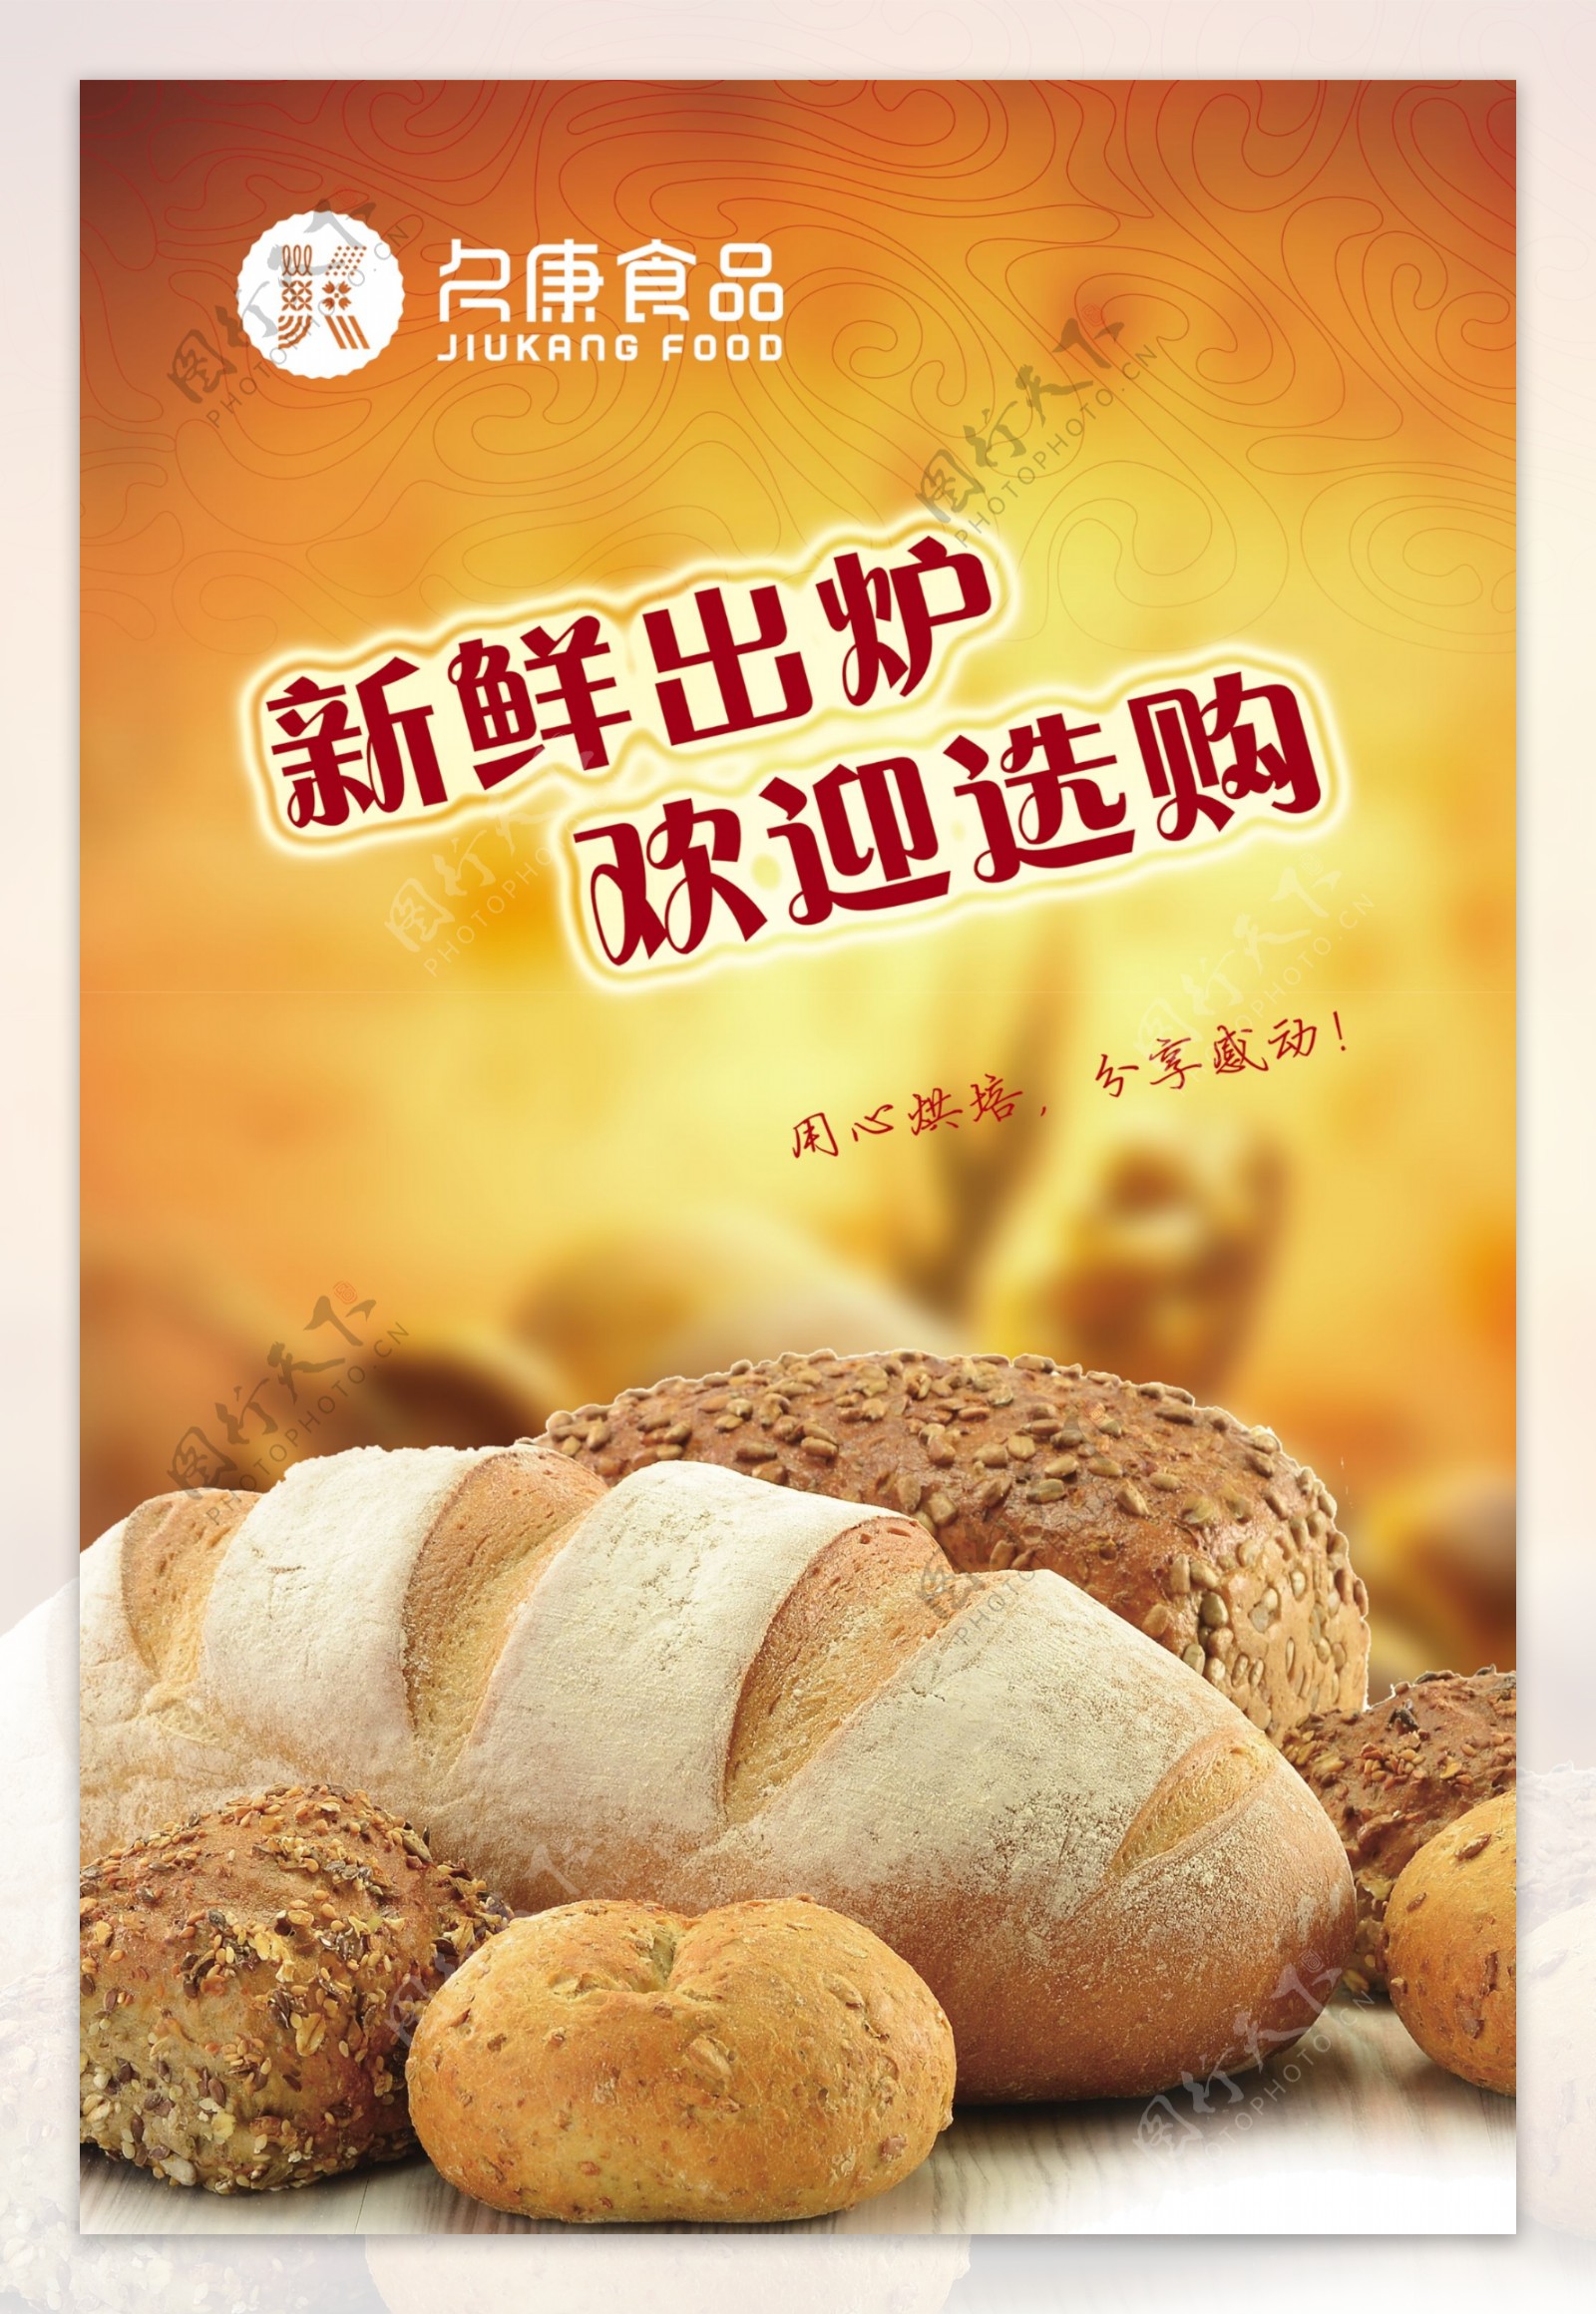 久康食品面包广告